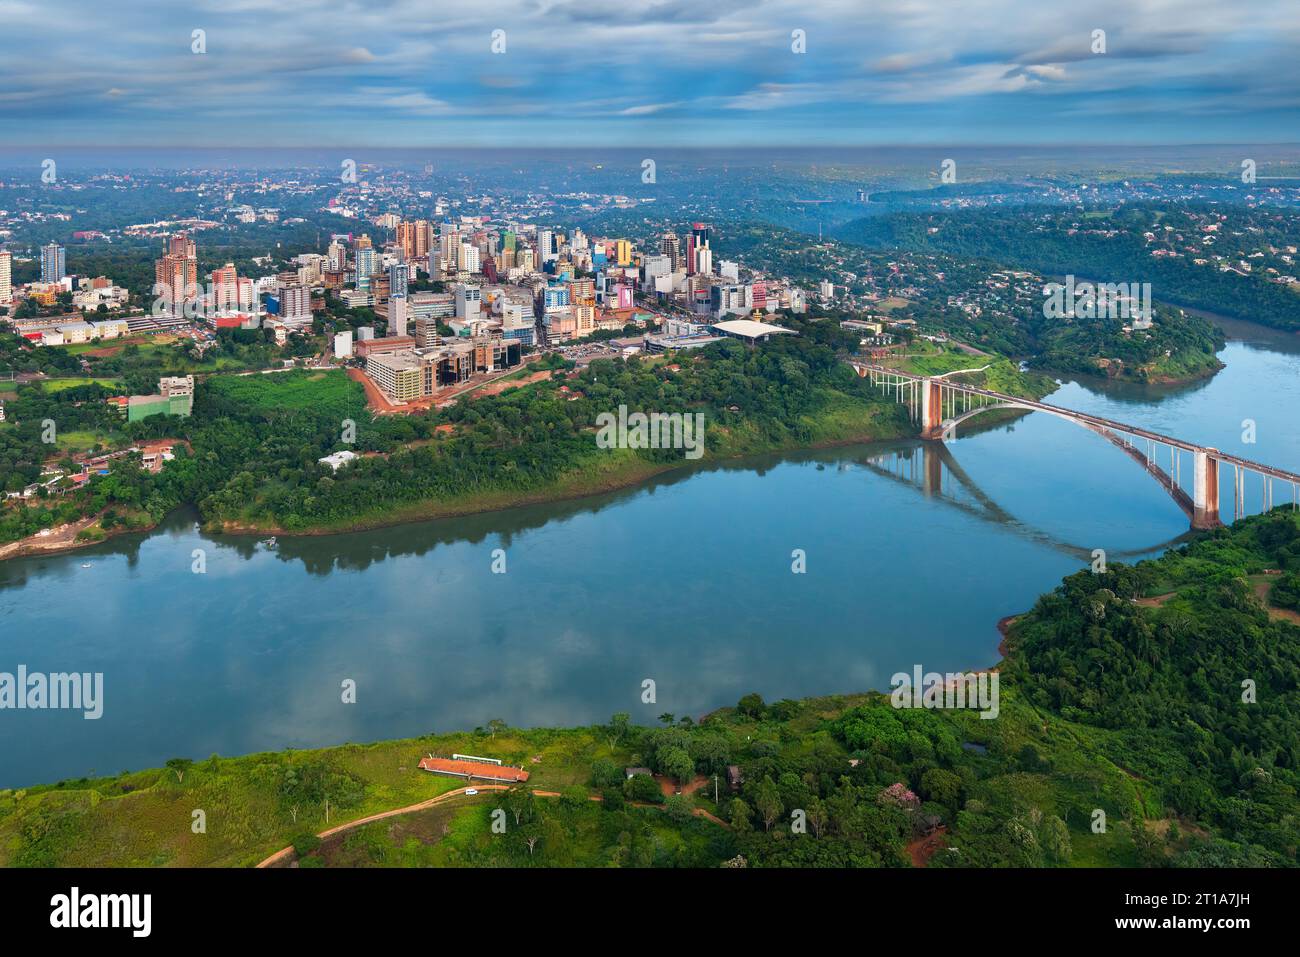 Vista aerea della città paraguaiana di Ciudad del Este e del Ponte dell'amicizia, che collega Paraguay e Brasile attraverso il confine sul fiume Parana, Foto Stock